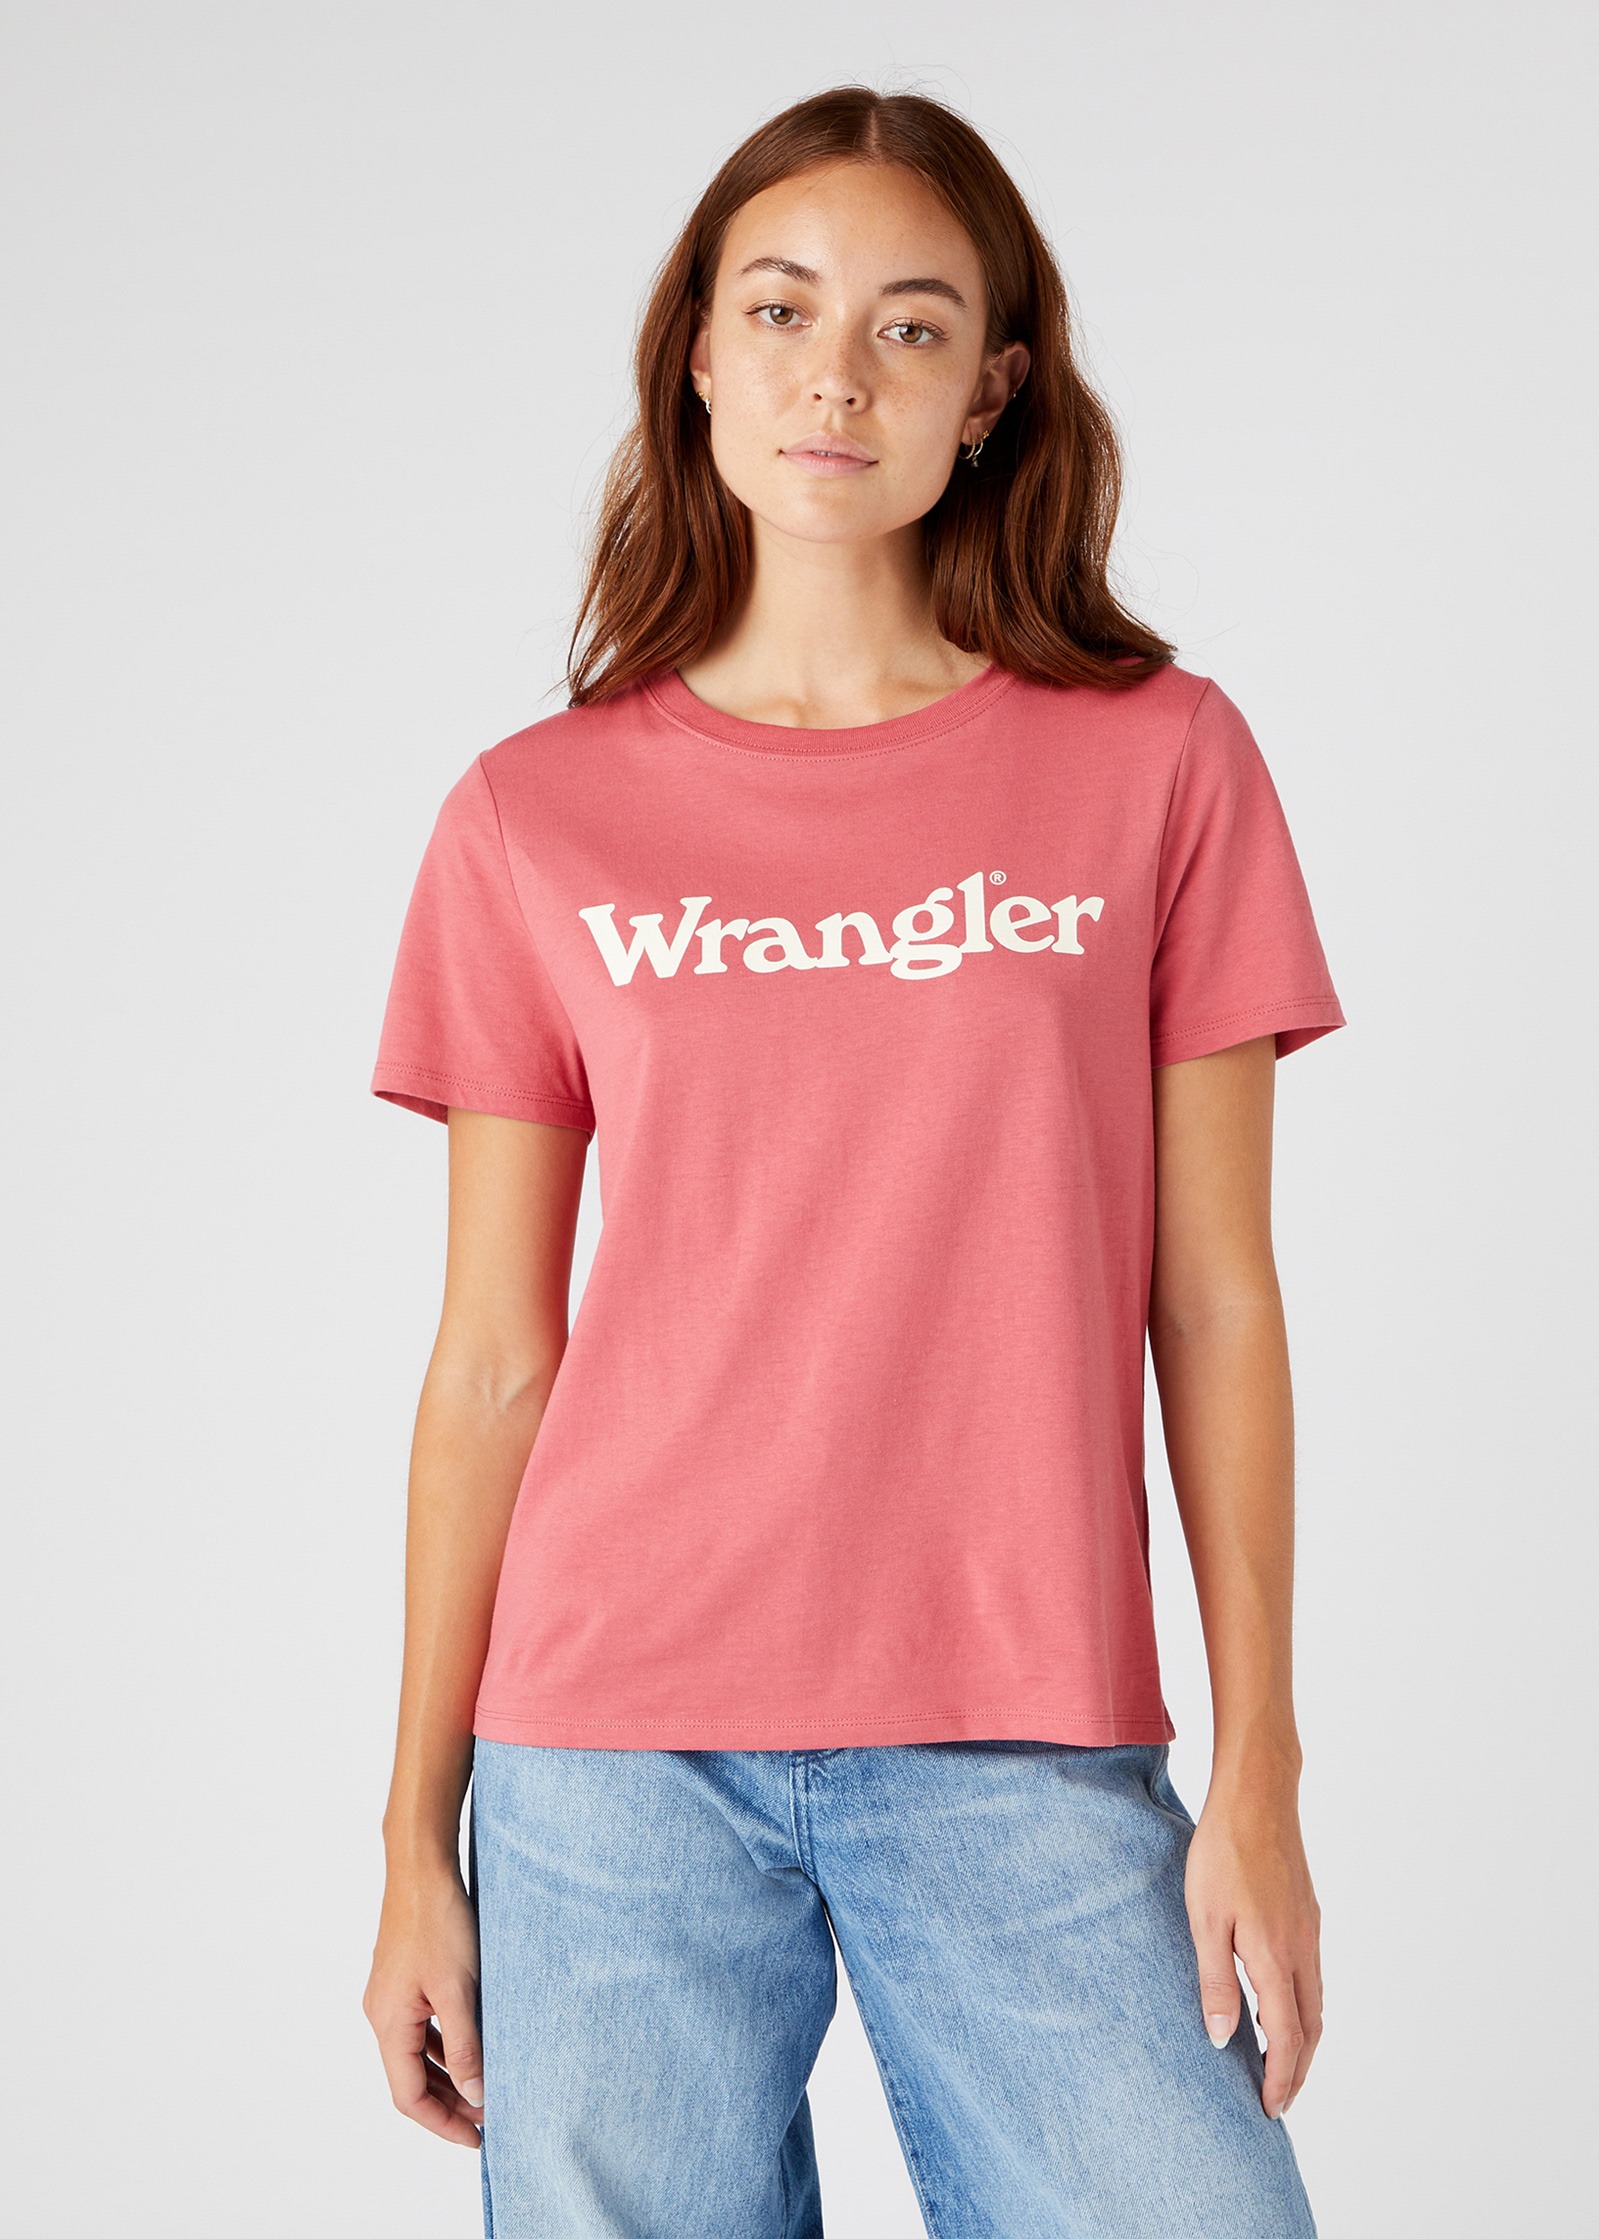 фото Футболка женская wrangler regular tee розовая xl